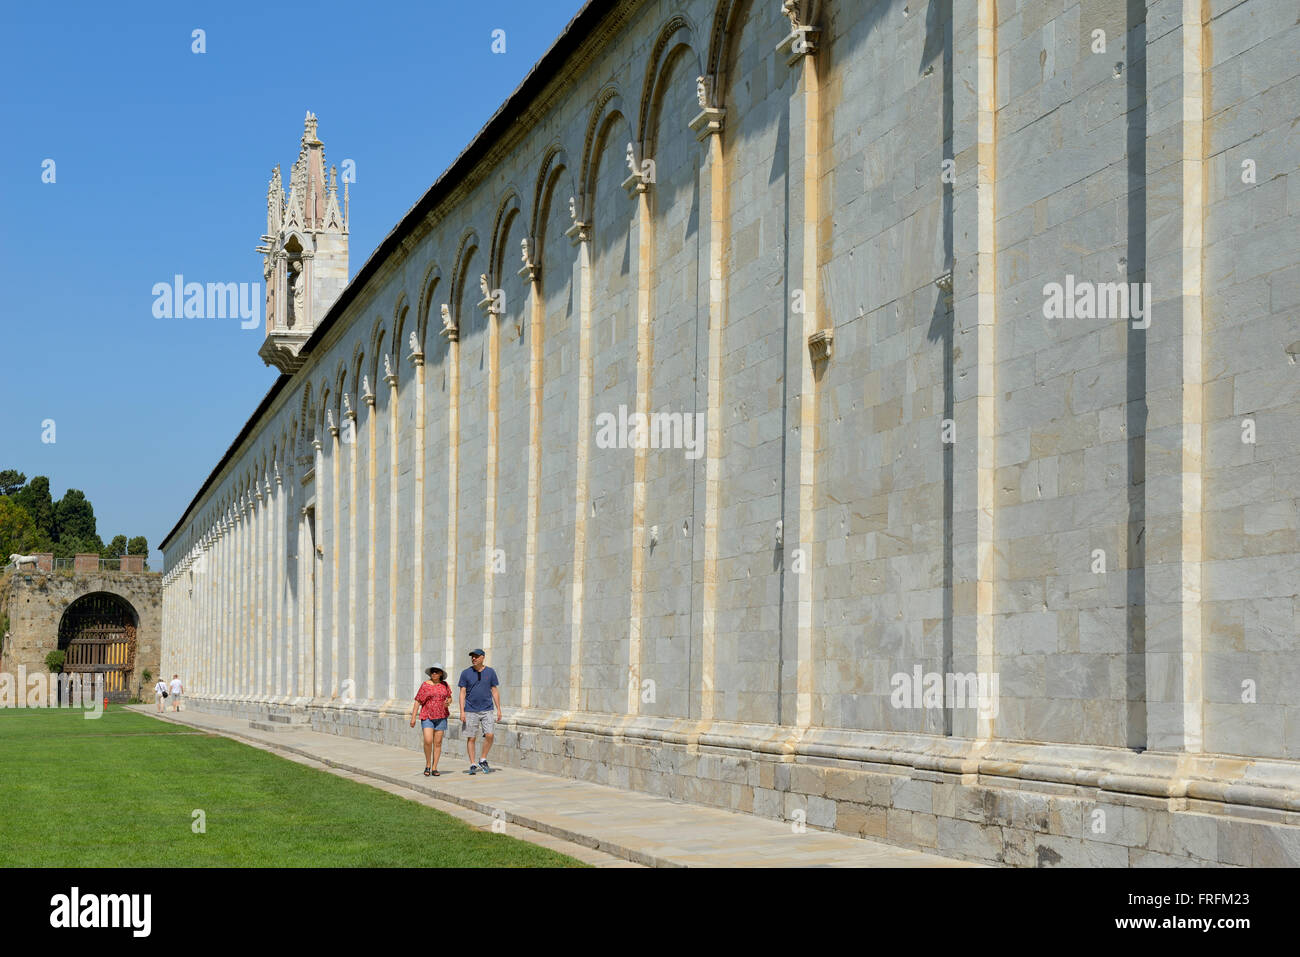 Camposanto, cloistered cemetery, Pisa, Toscana, Tuscany, Italy, Europe Stock Photo